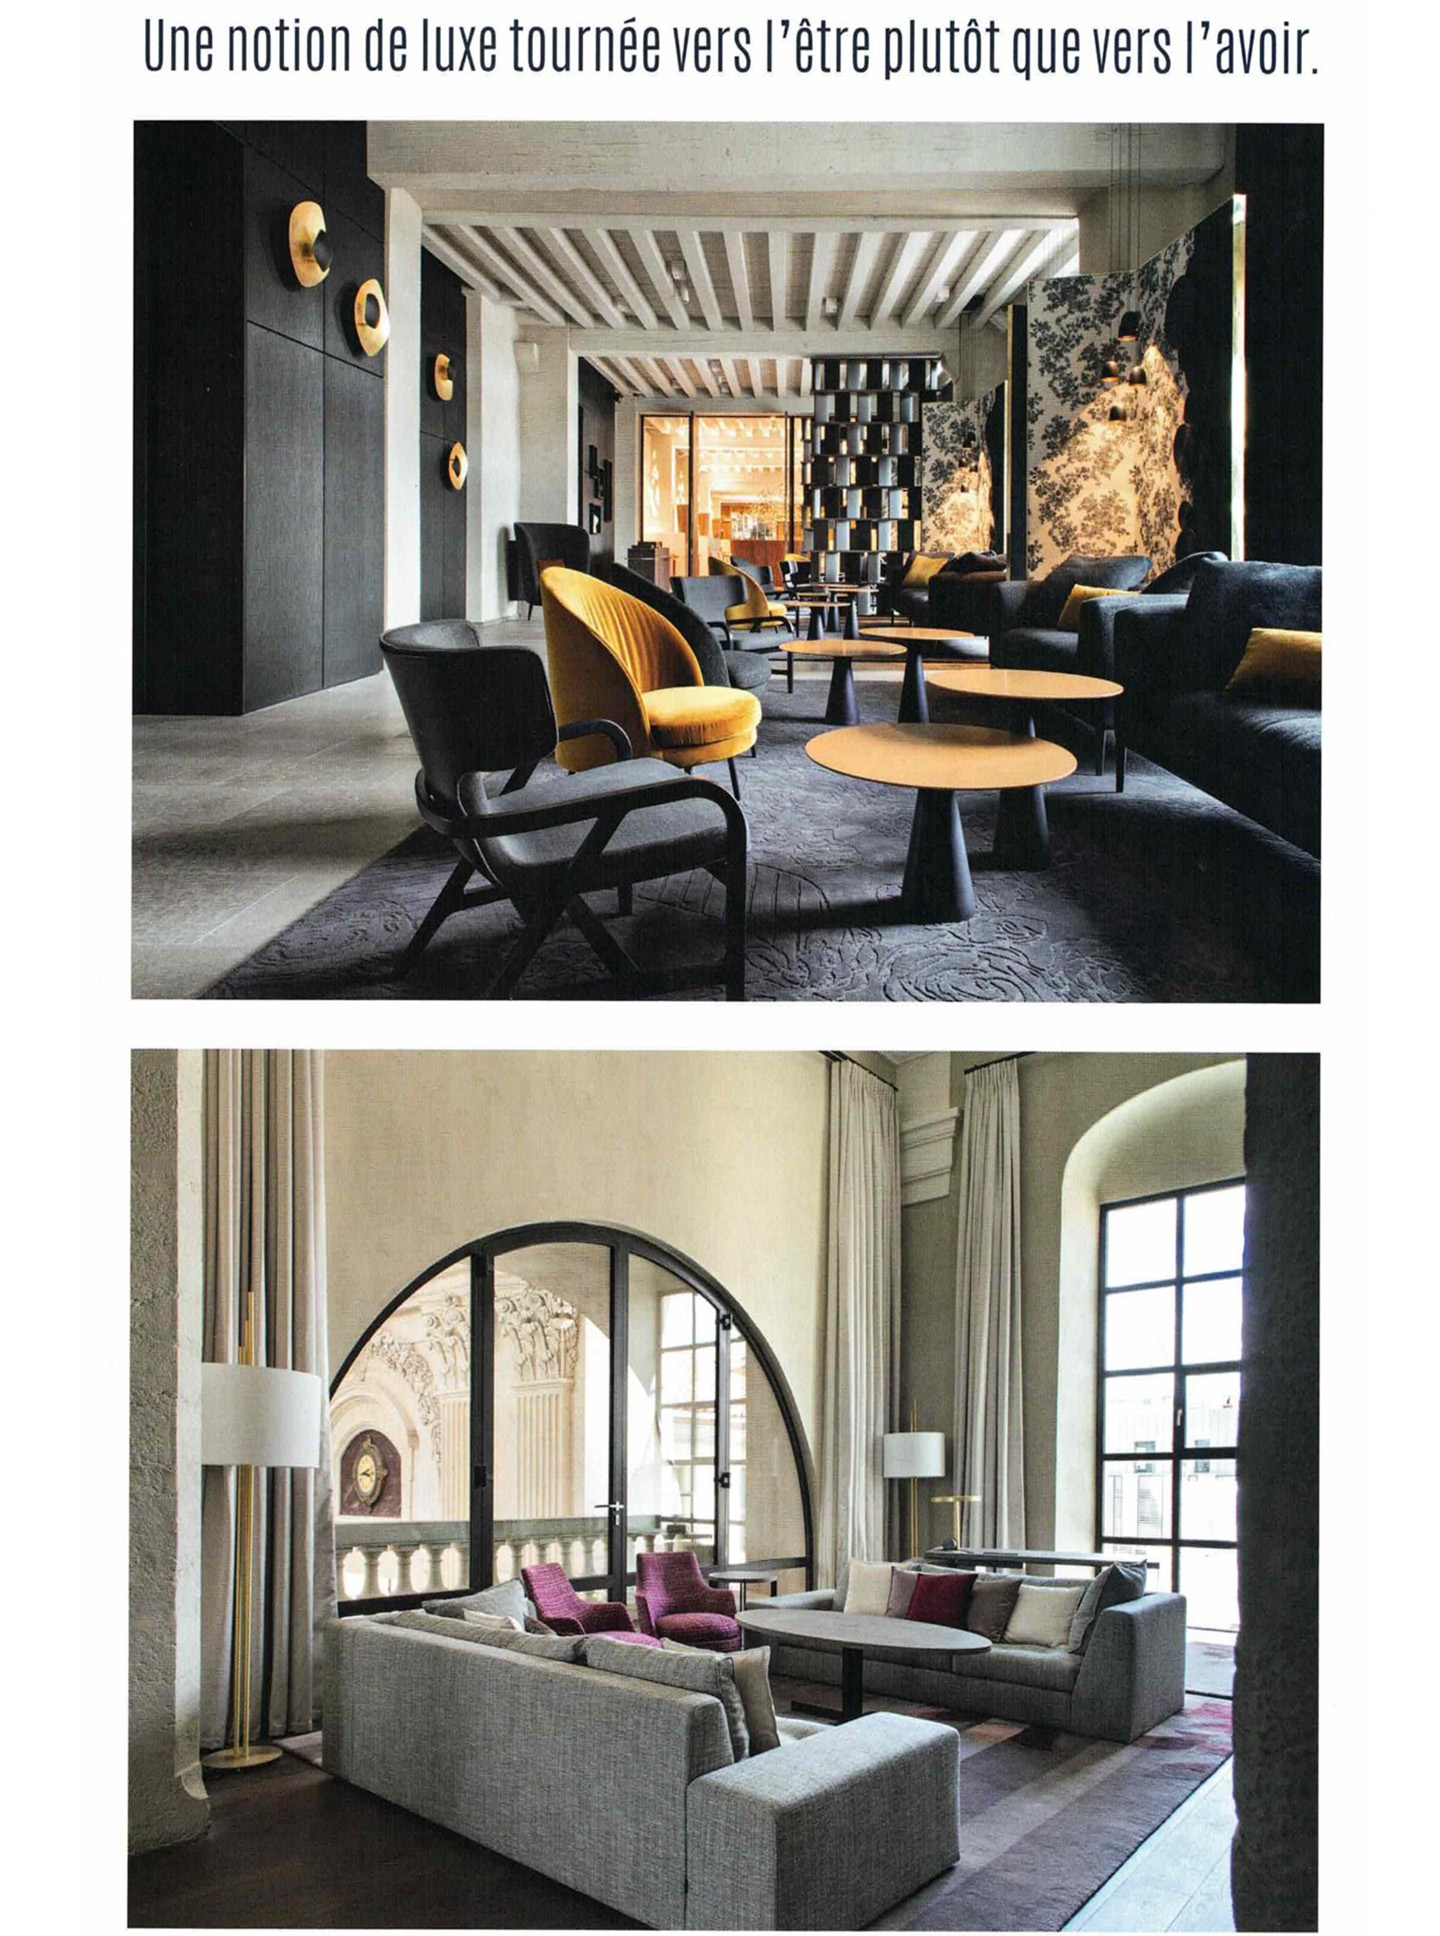 Article sur l'InterContinental Lyon Hotel Dieu réalisé par le studio jean-Philippe Nuel dans le magazine domodéco, nouvel hotel de luxe, architecture d'intérieur de luxe, patrimoine historique